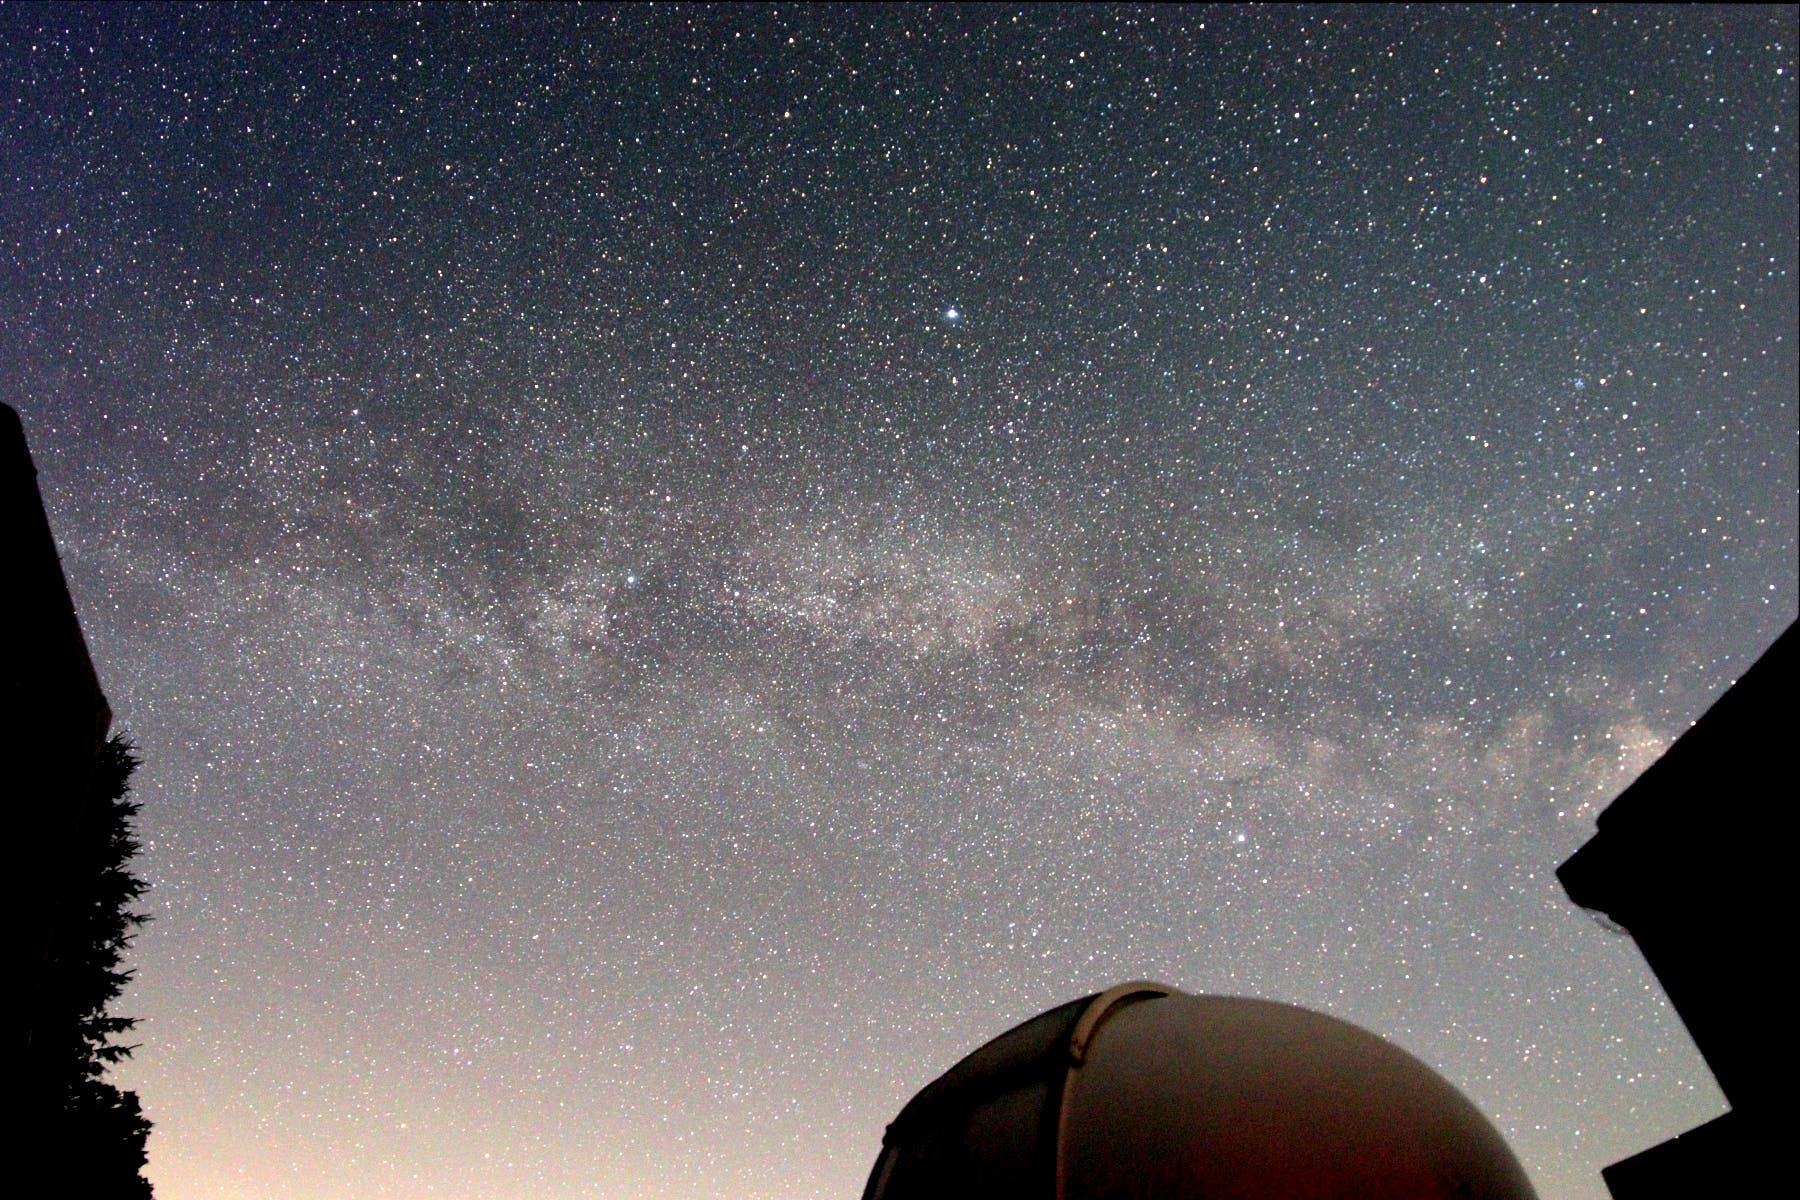 Perseidennacht-Milchstraße über Little Palomar Observatory